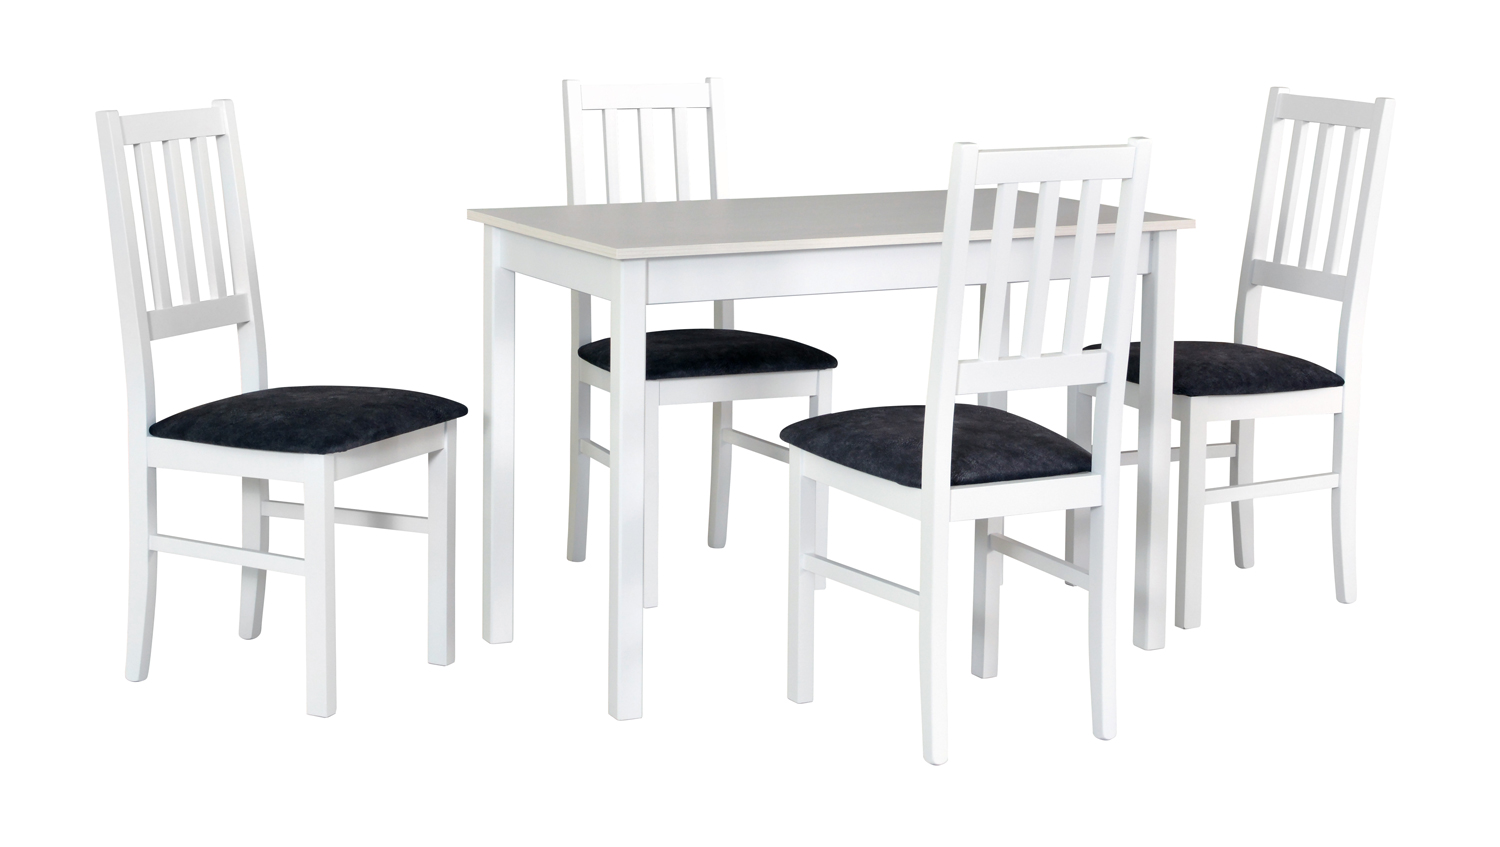 jedálenský set, stôl MX 2 + stolička B 4 (1+4)